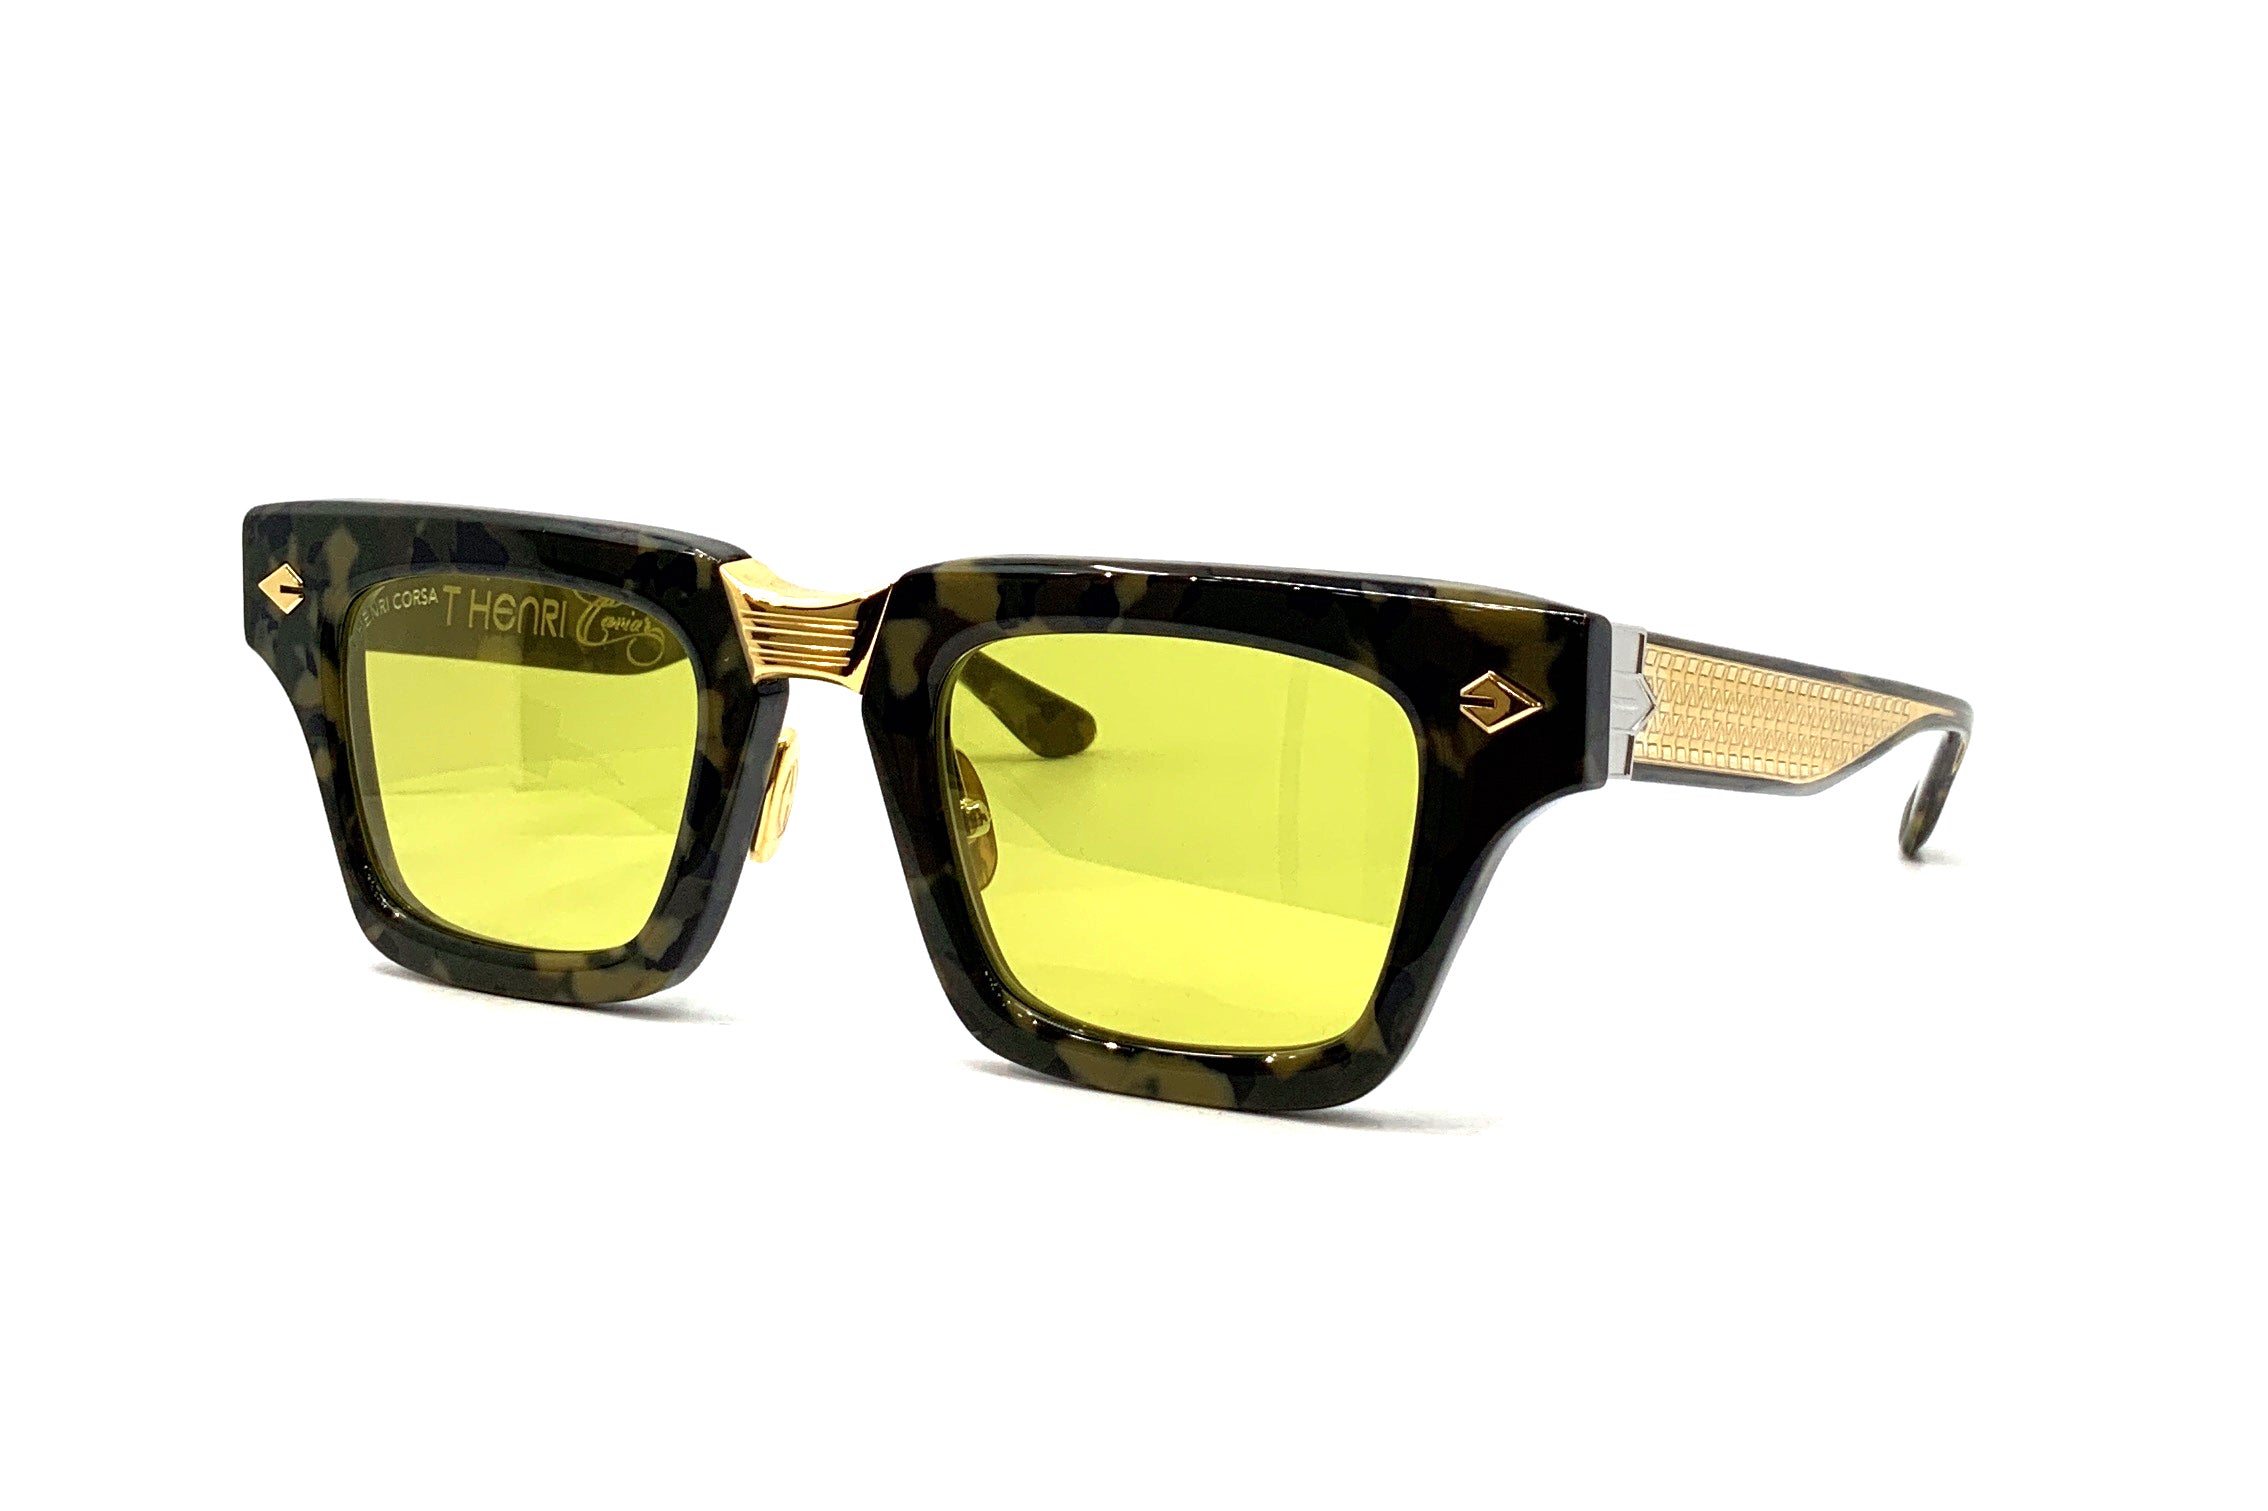 Louis Vuitton 1.1 Millionaires Sunglasses Pale Yellow